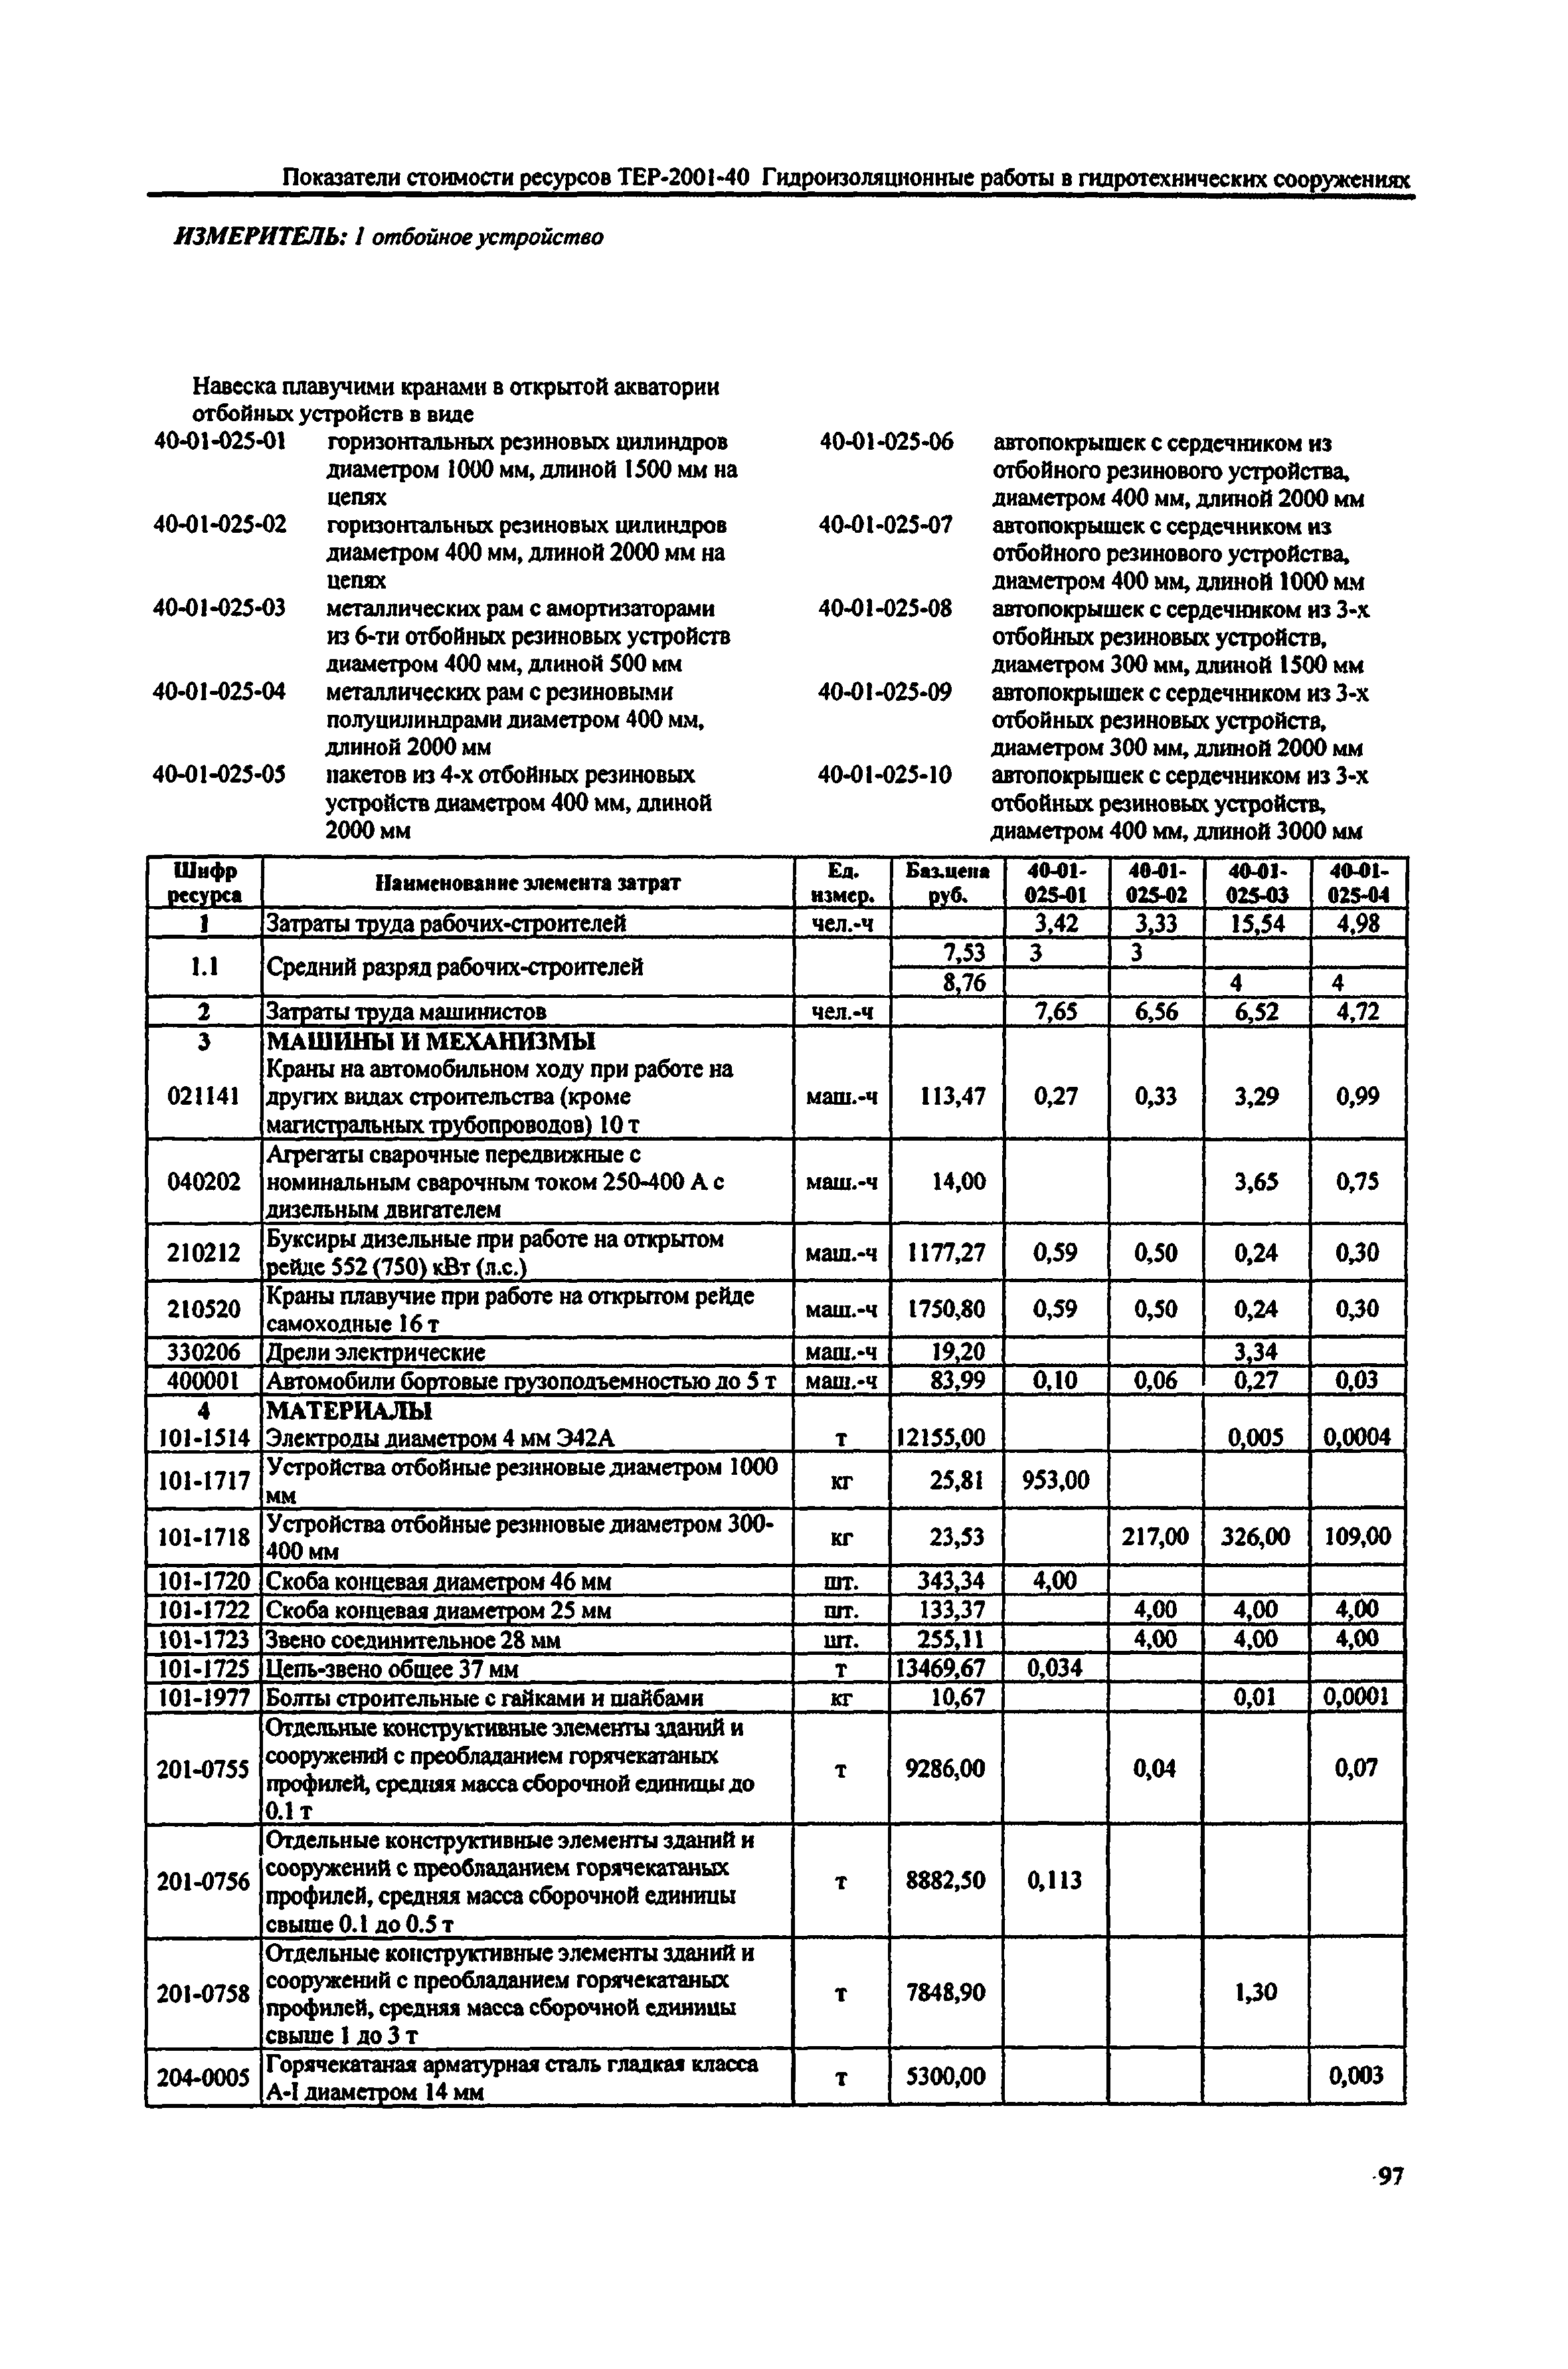 Справочное пособие к ТЕР 81-02-40-2001